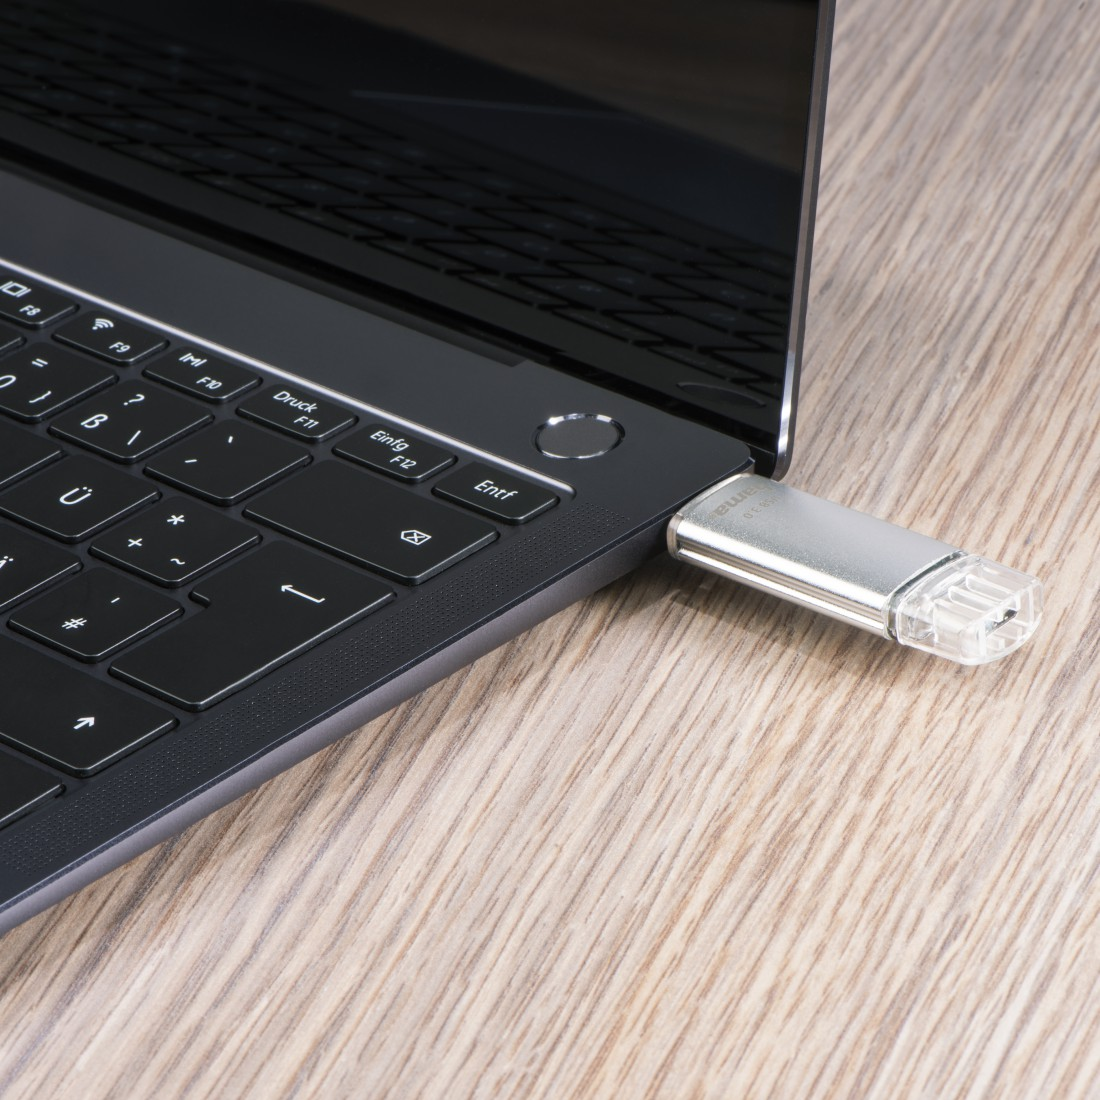 HAMA C-Laeta USB-Stick, 128 GB, MB/s, Silber 40